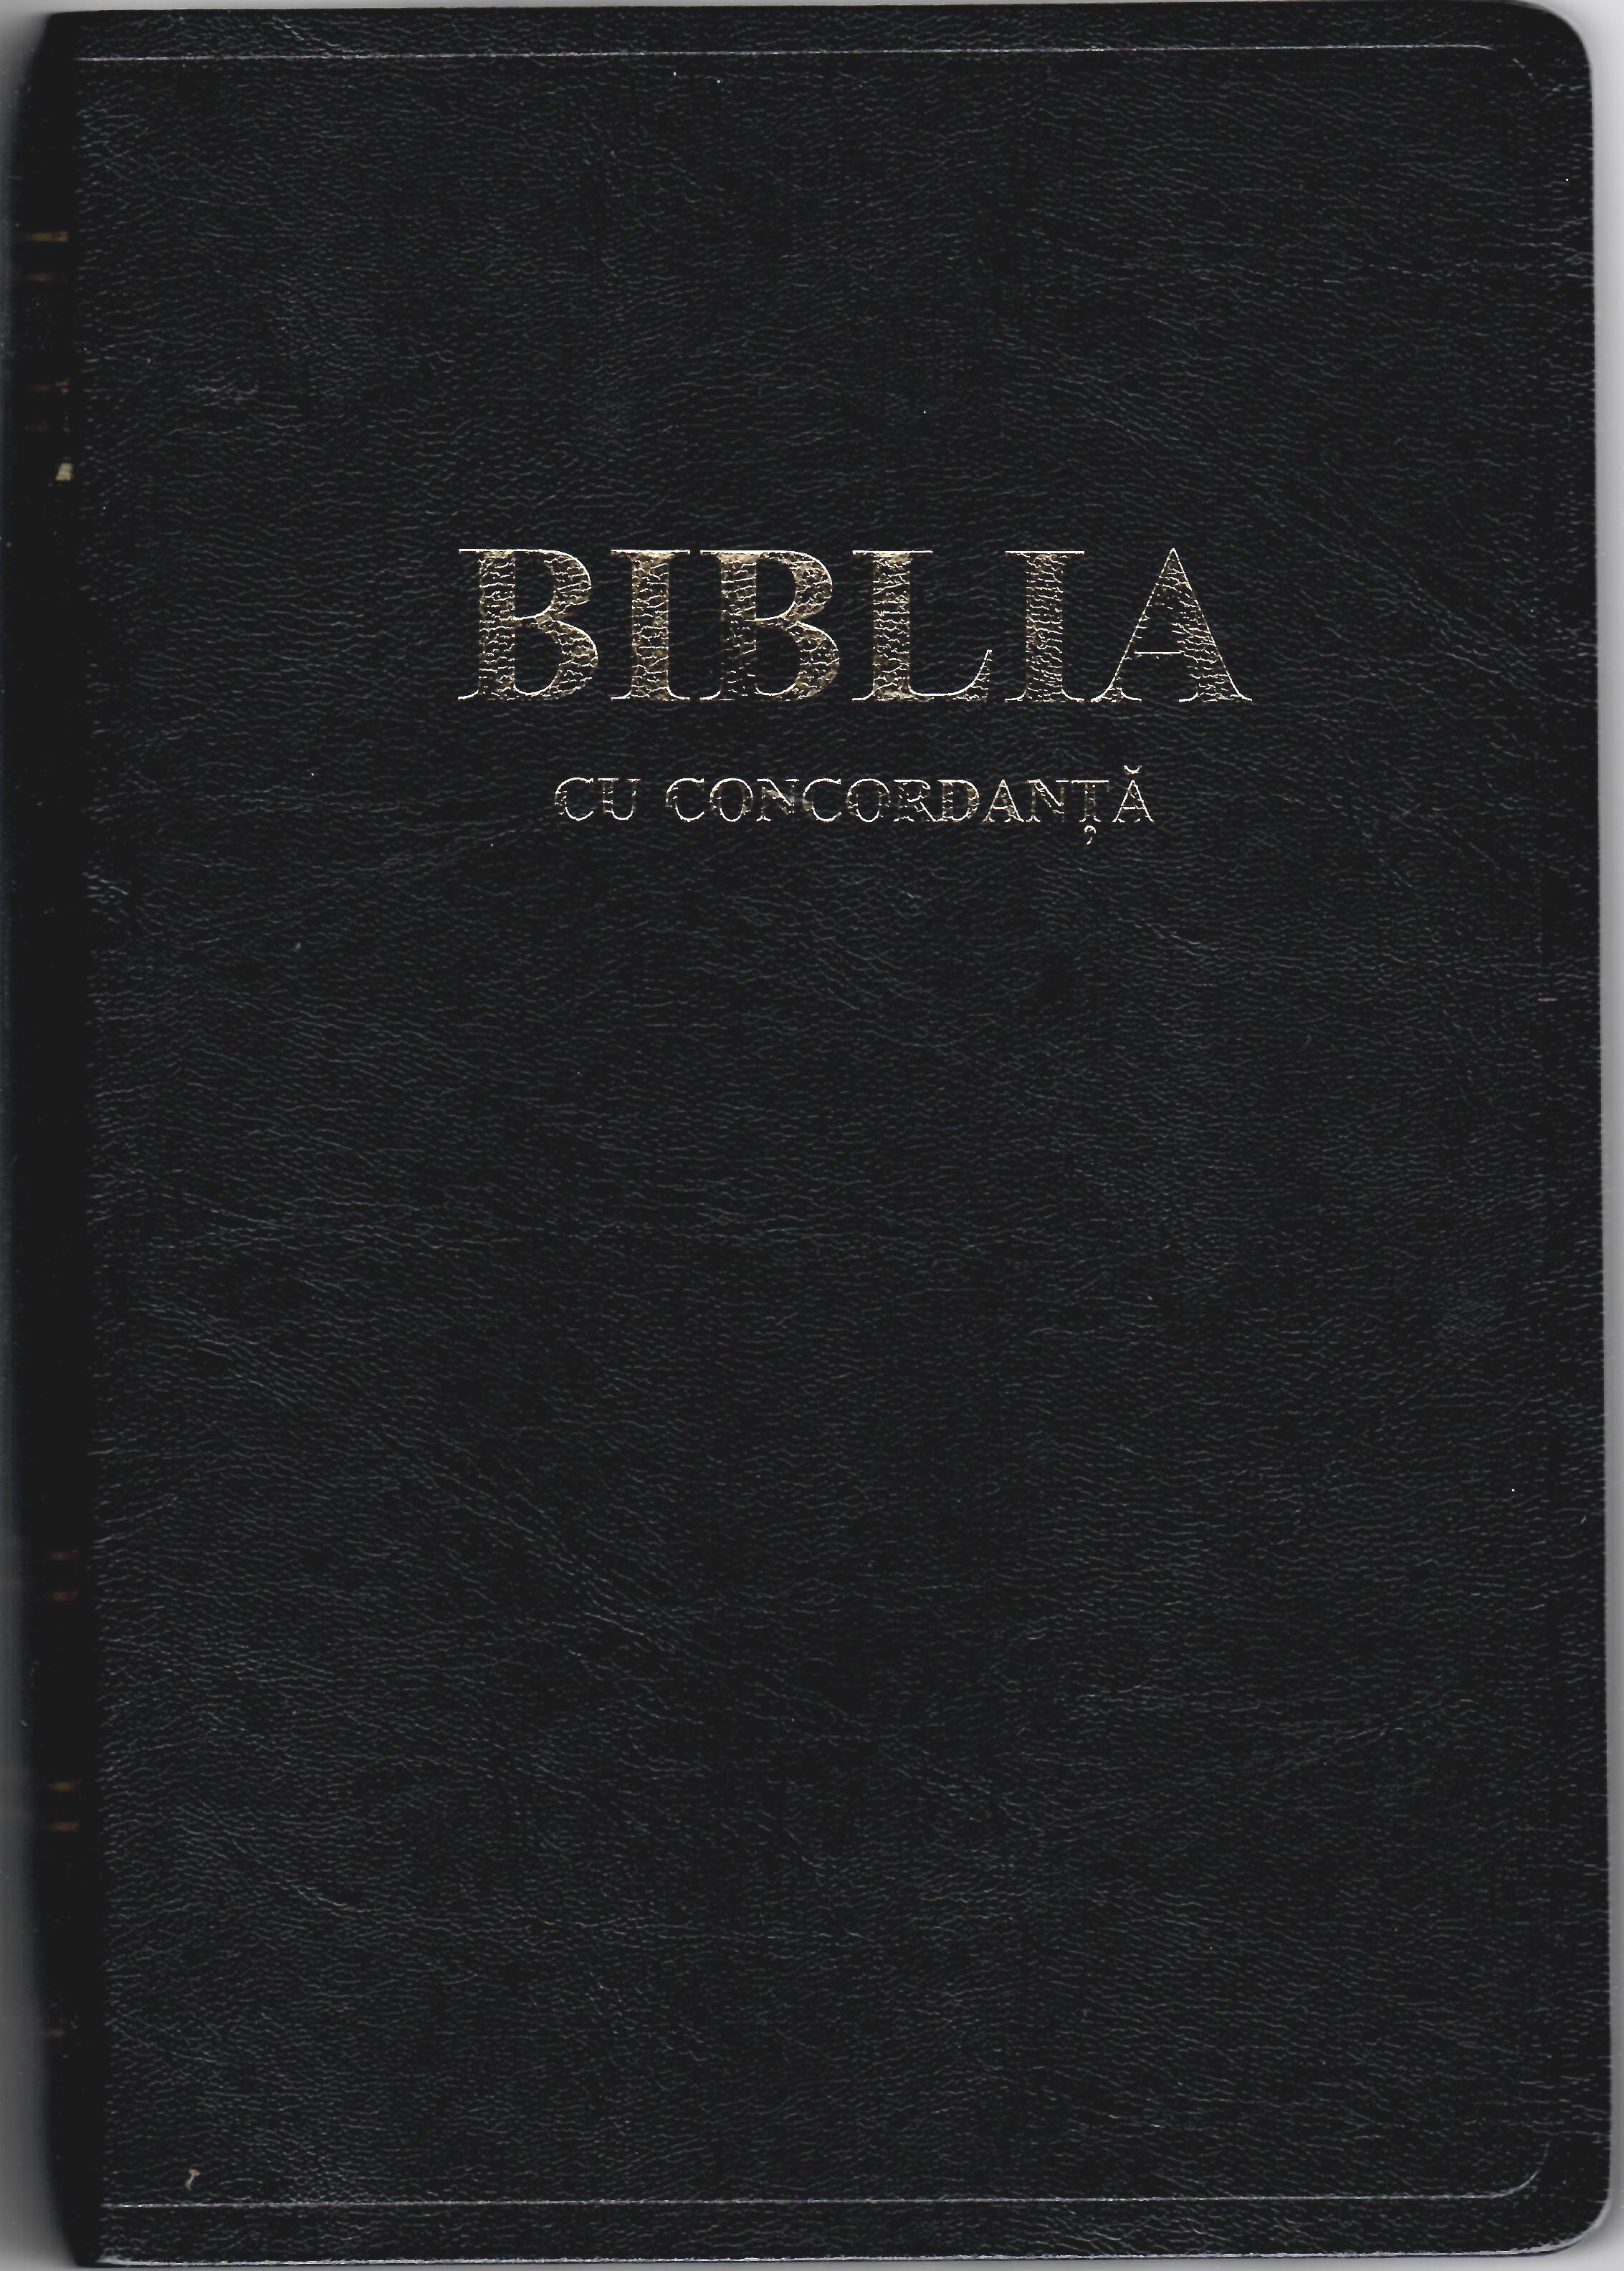 Biblia - cu concordanta, format foarte mare, coperta piele, aurită, index, cuv. d-lui Isus în roşu